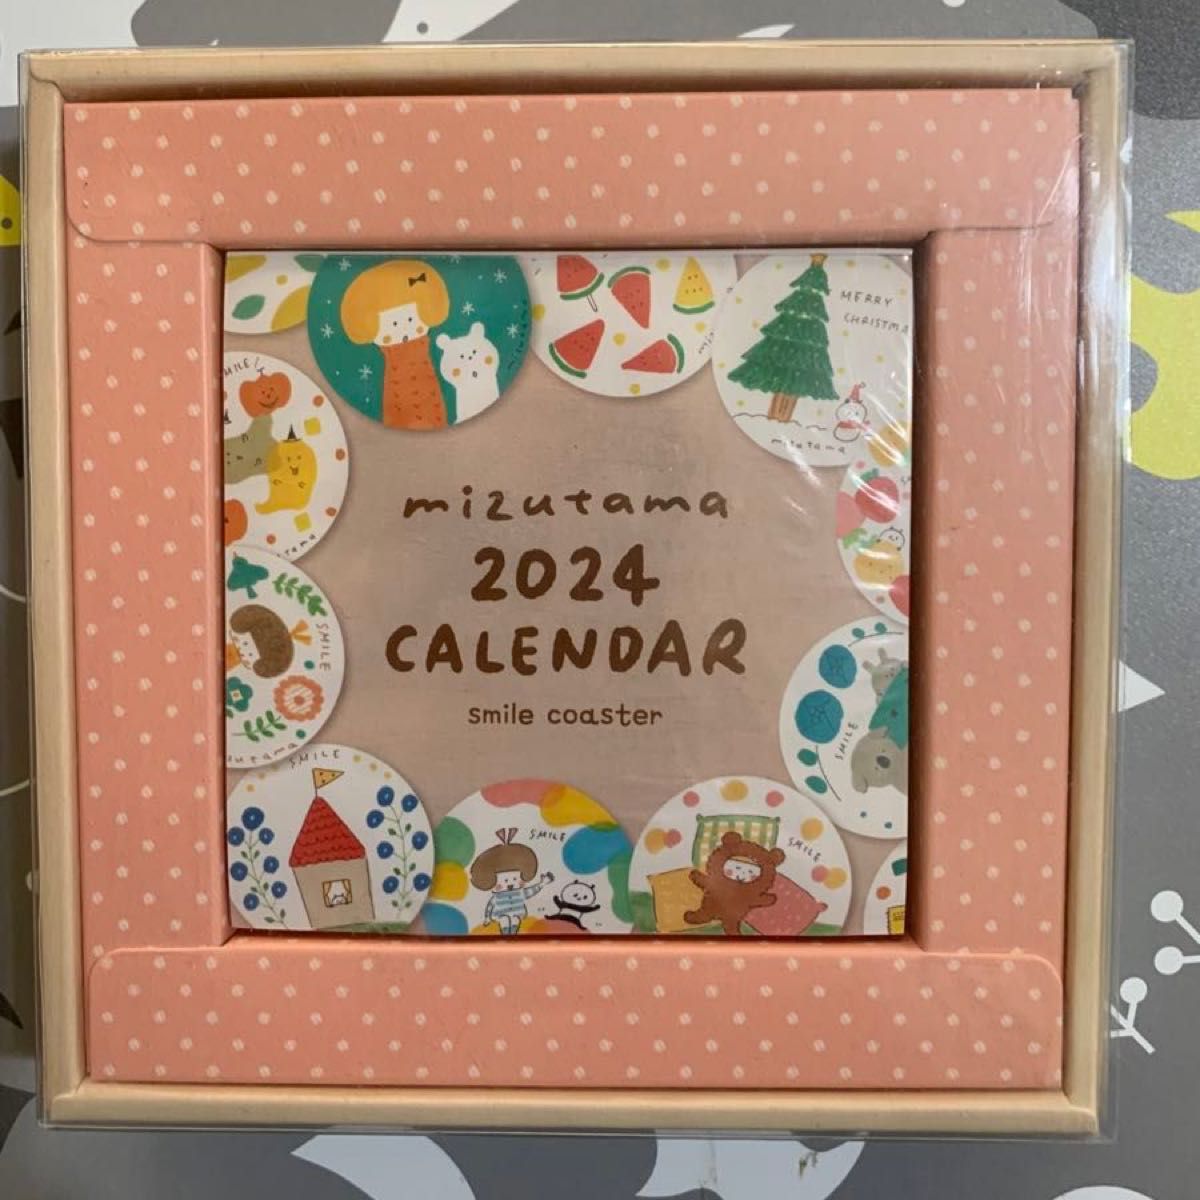 mizutamaさん 日めくり カレンダー  新日本カレンダー  